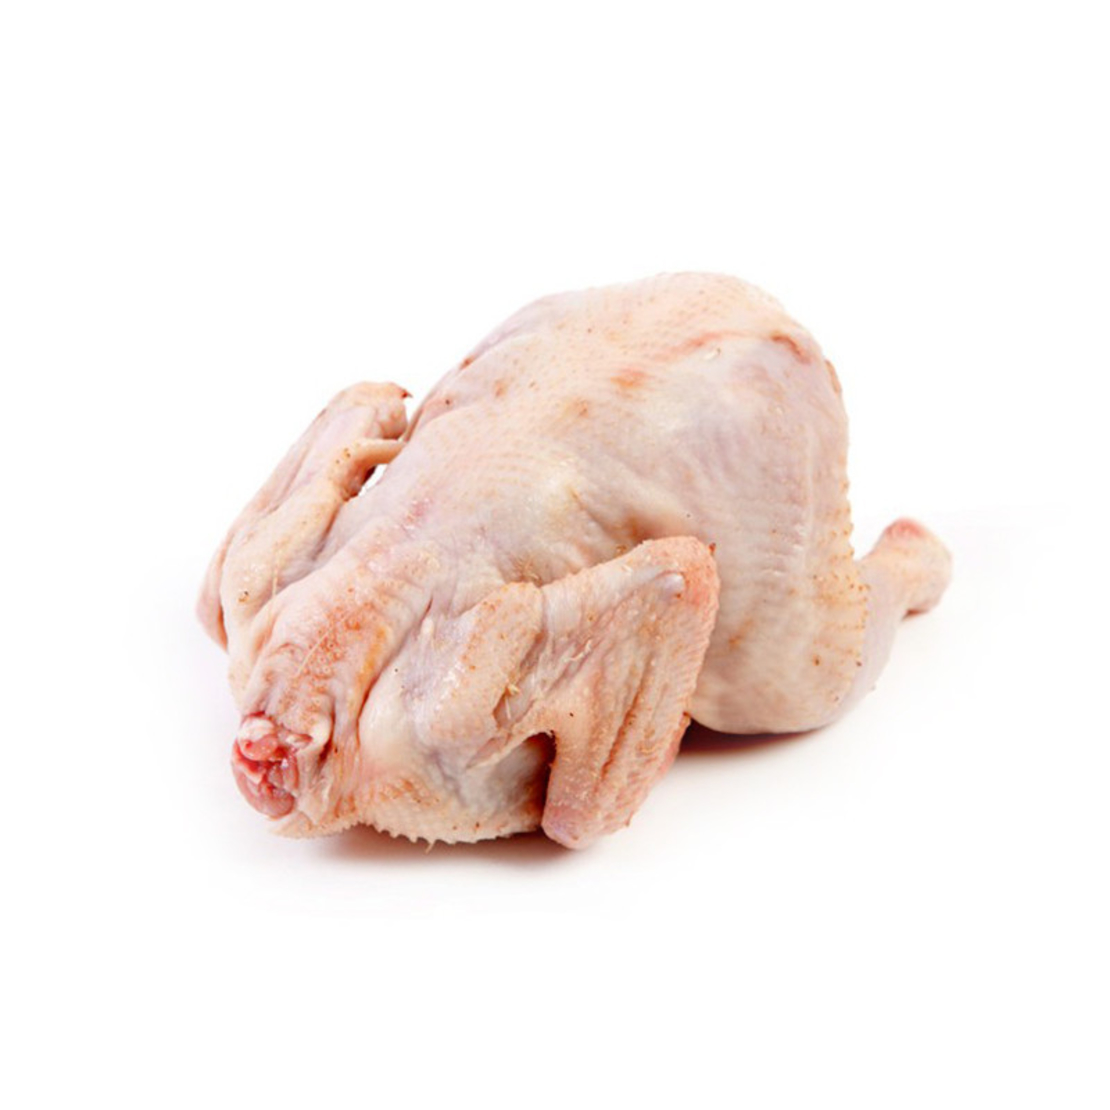 цыплята корнишоны в духовке фото